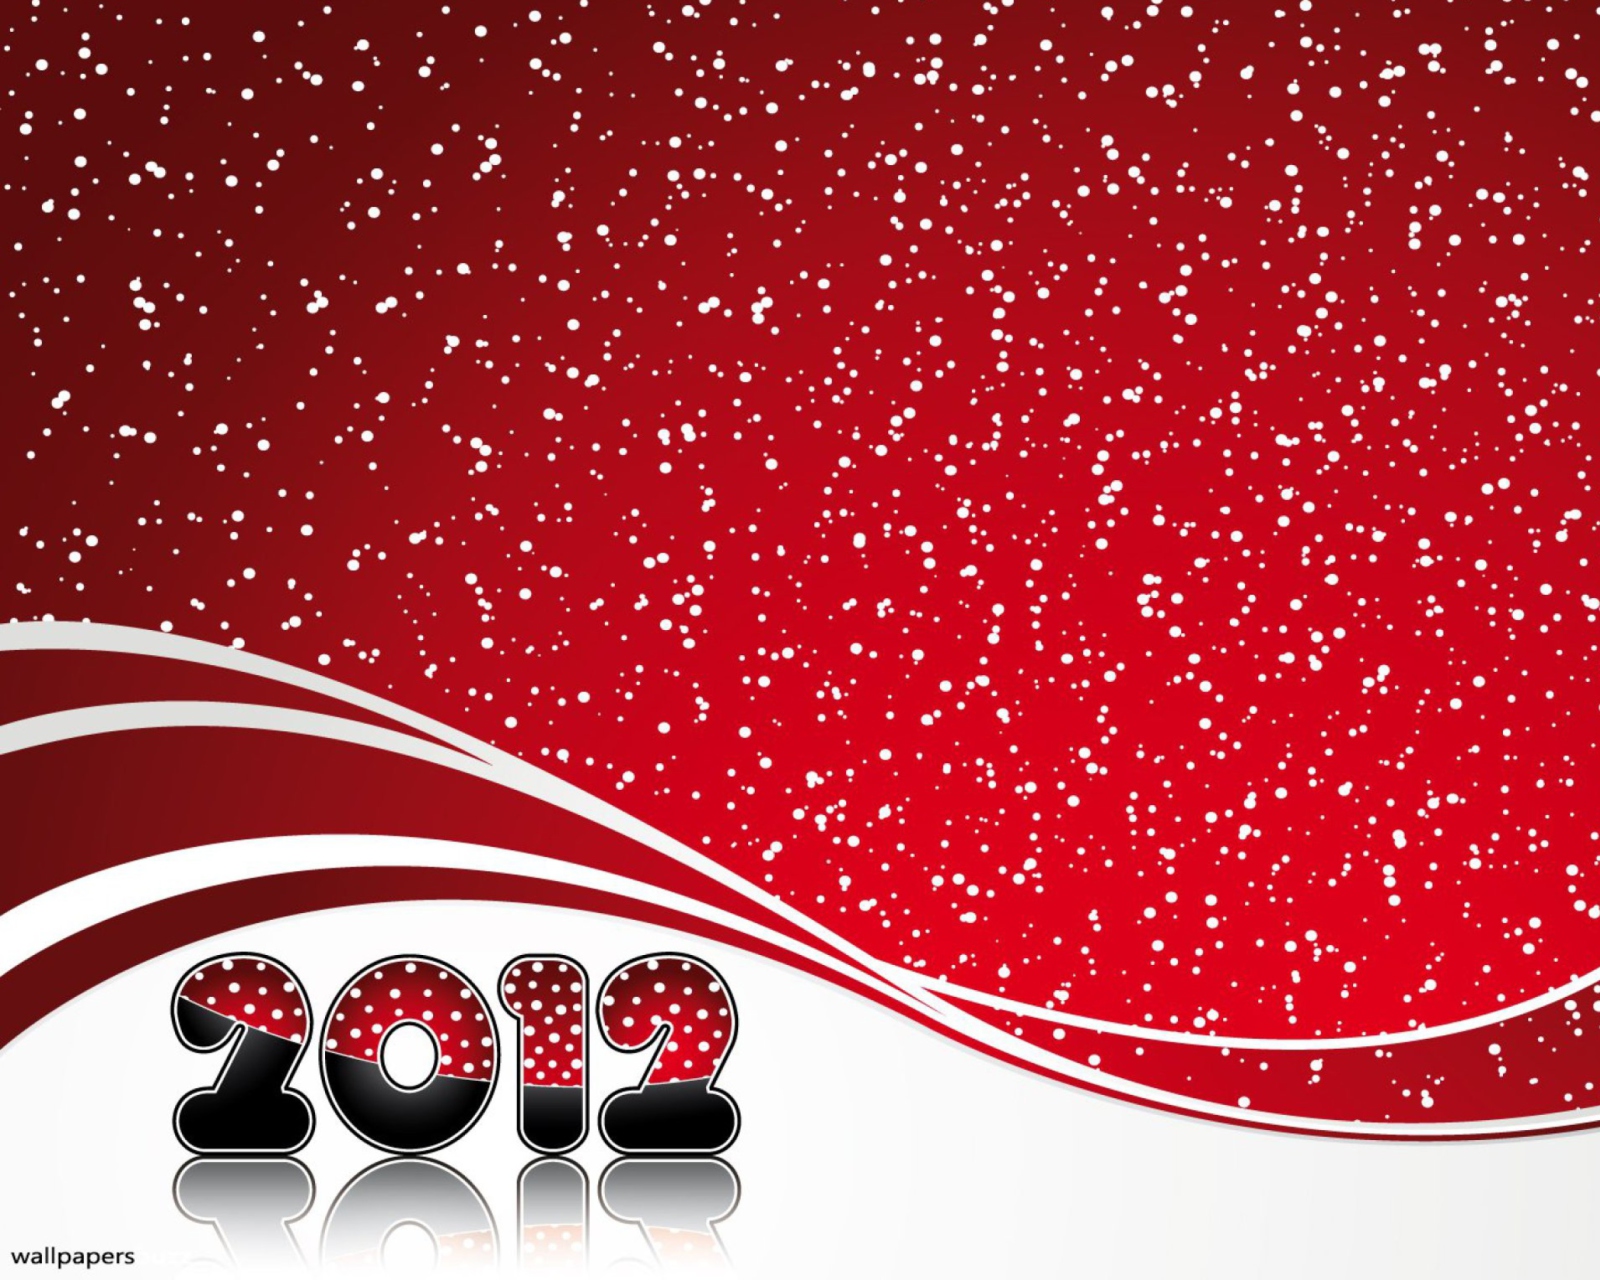 Обои Red Snow New Year 1600x1280